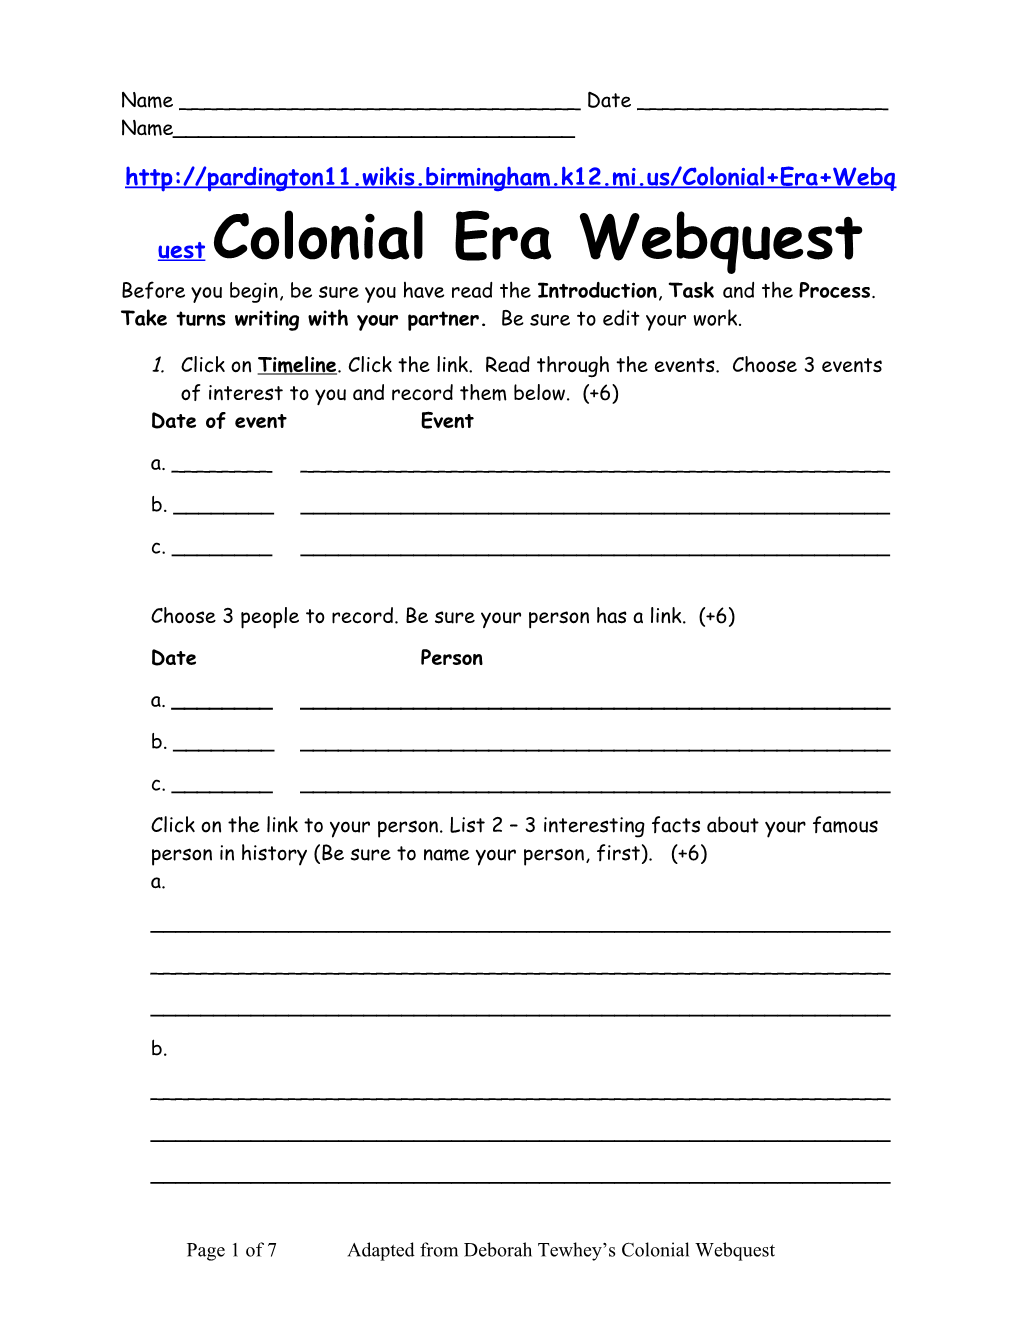 Colonial Era Webquest